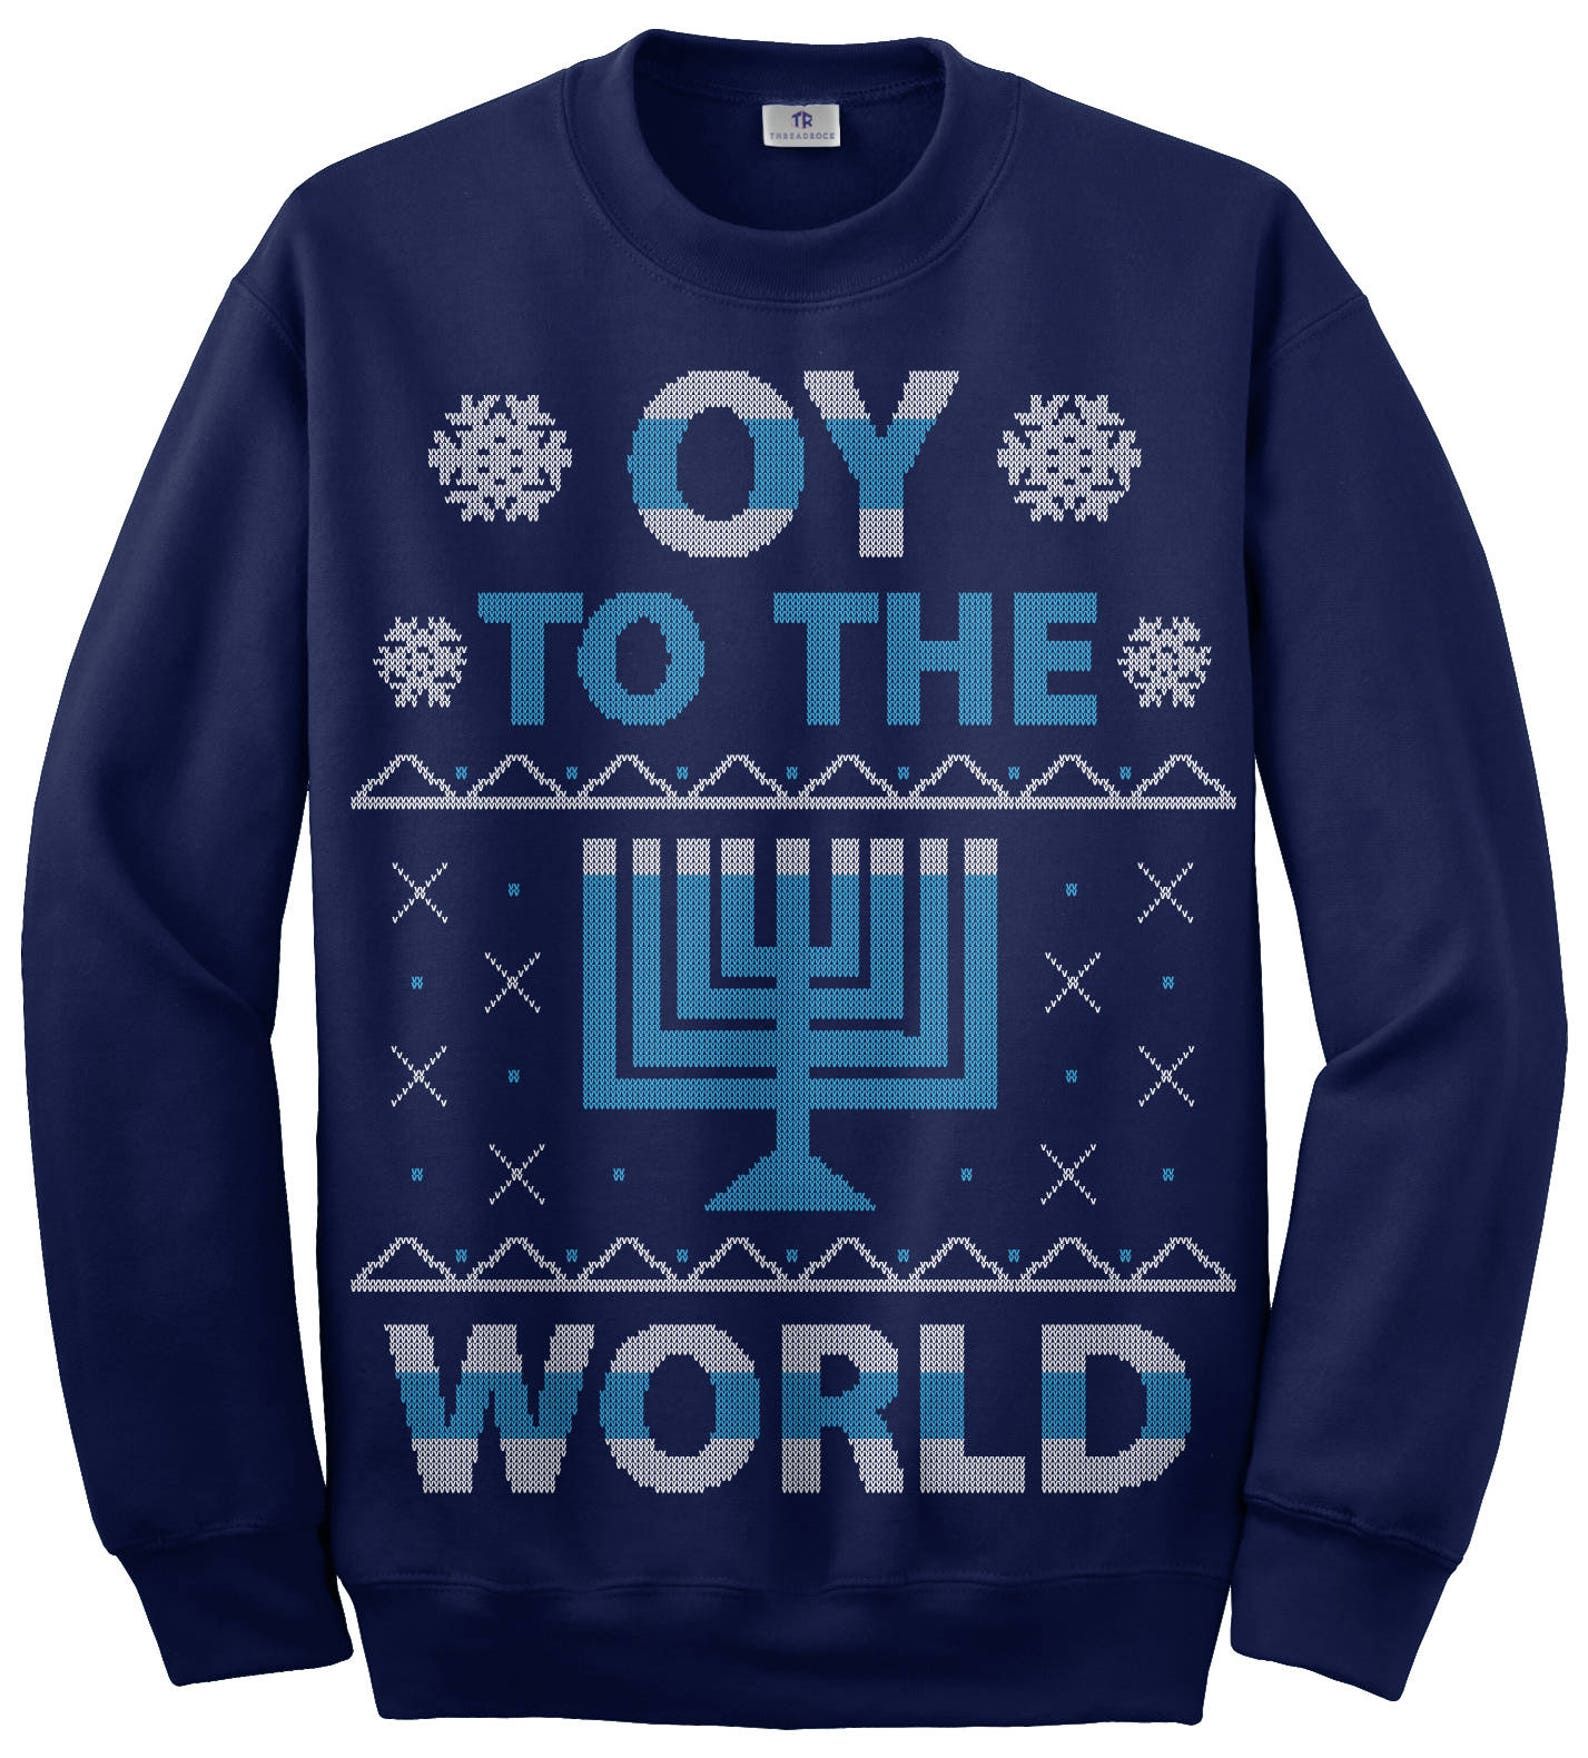 Oy to the World Hanukkah Celebration Unisex Sweatshirt